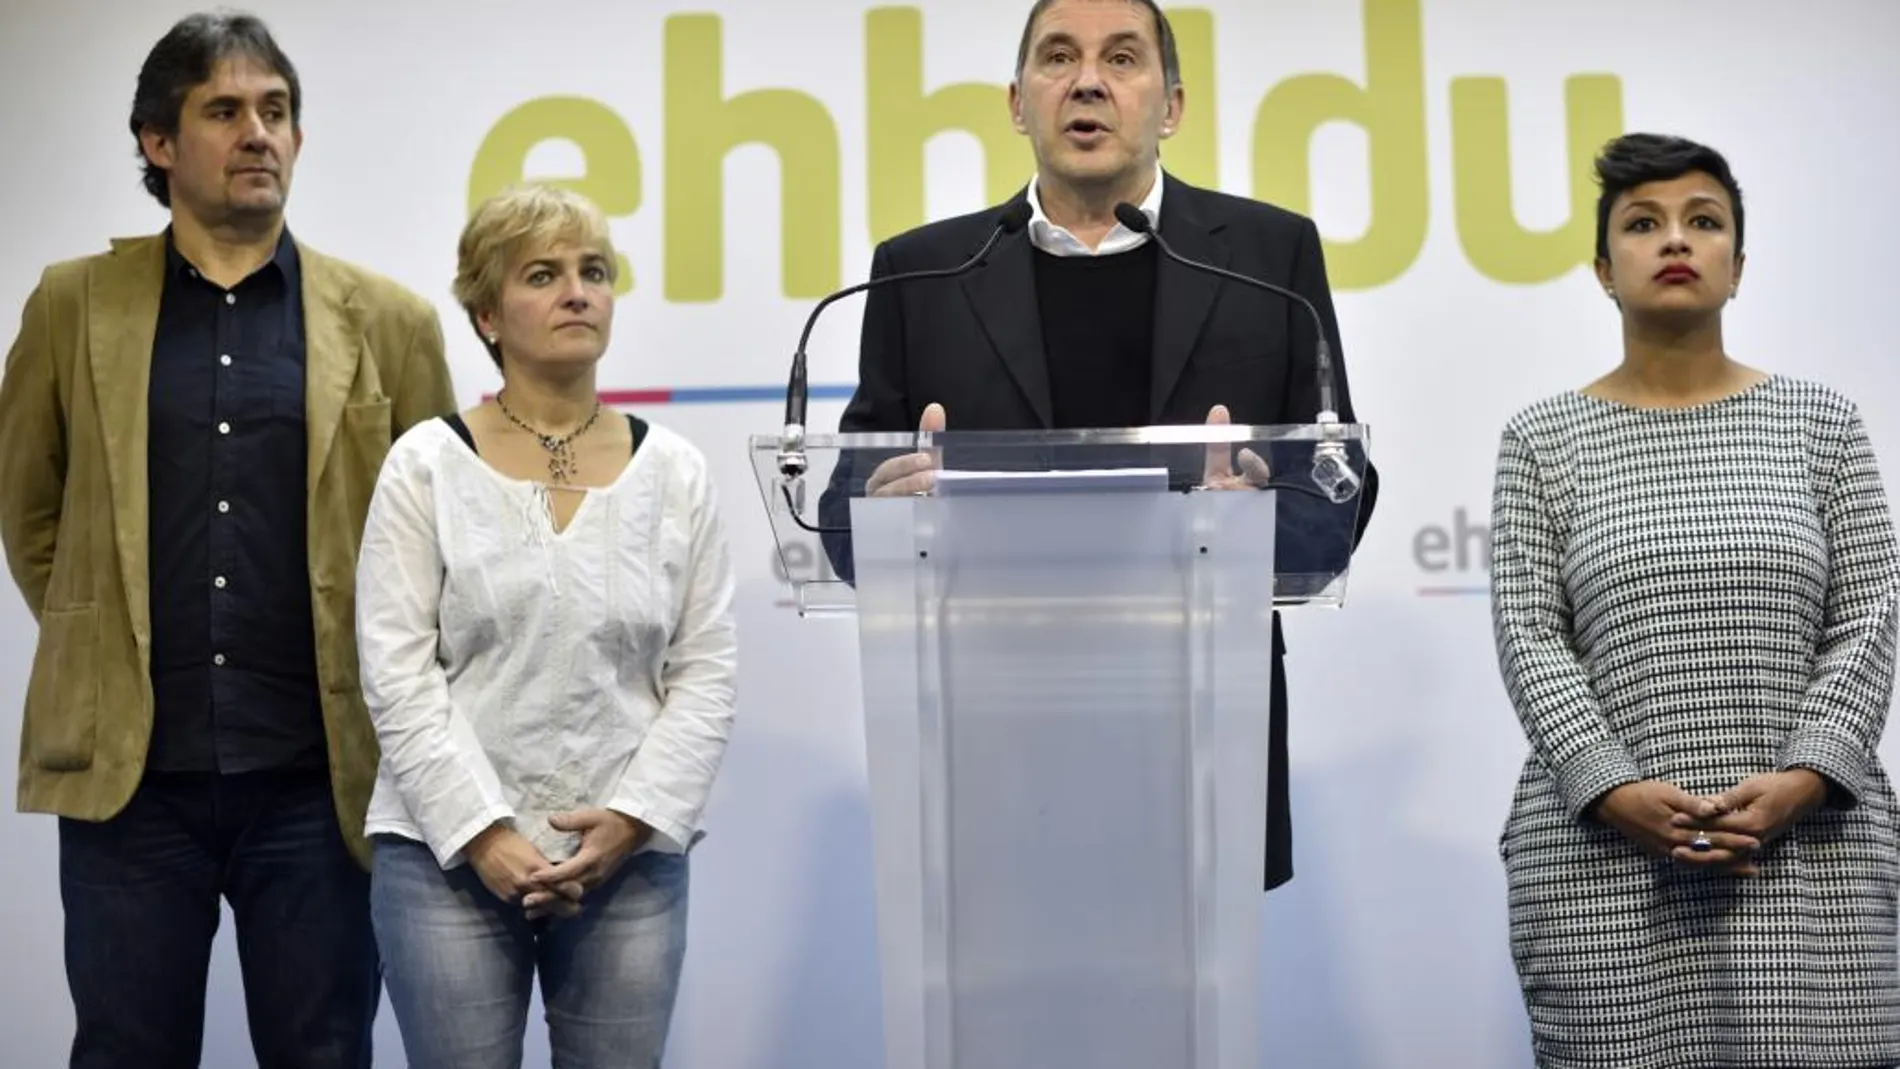 El líder de EHBildu, Arnaldo Otegi, acompañado por varios miembros de su partido, durante la rueda de prensa que ha ofrecido hoy en Bilbao